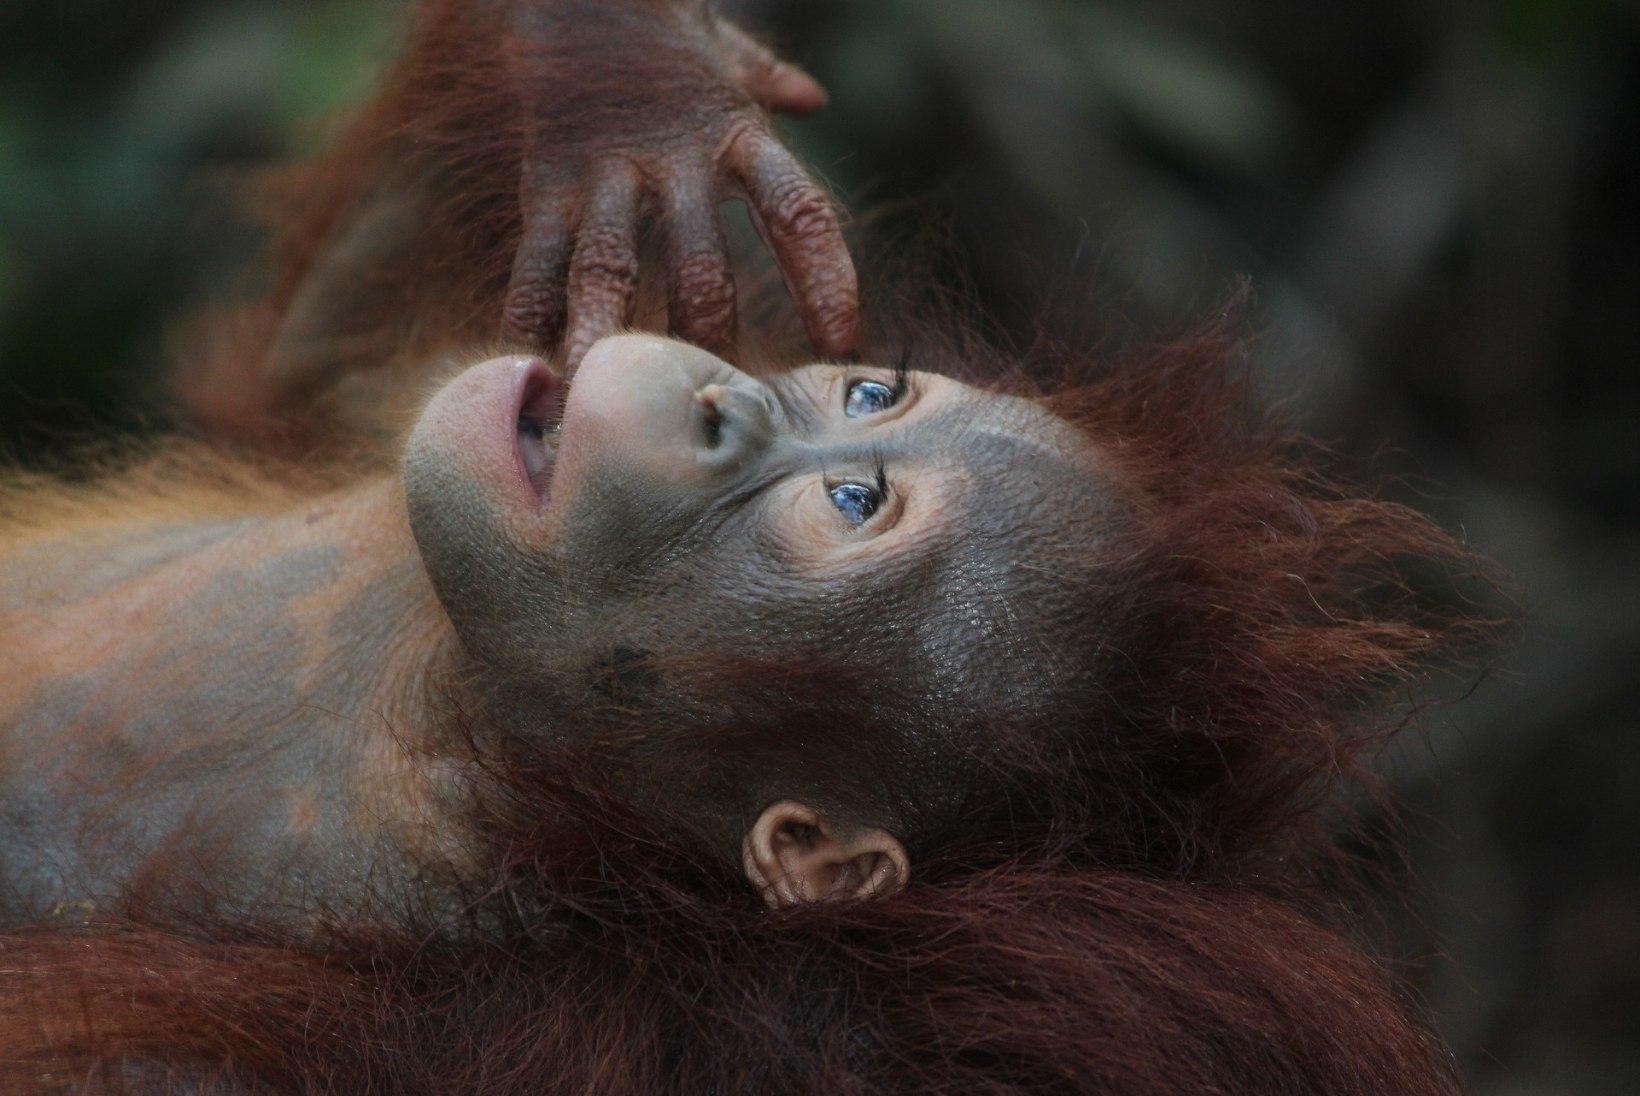 KURB: orangutane ähvardab hukk